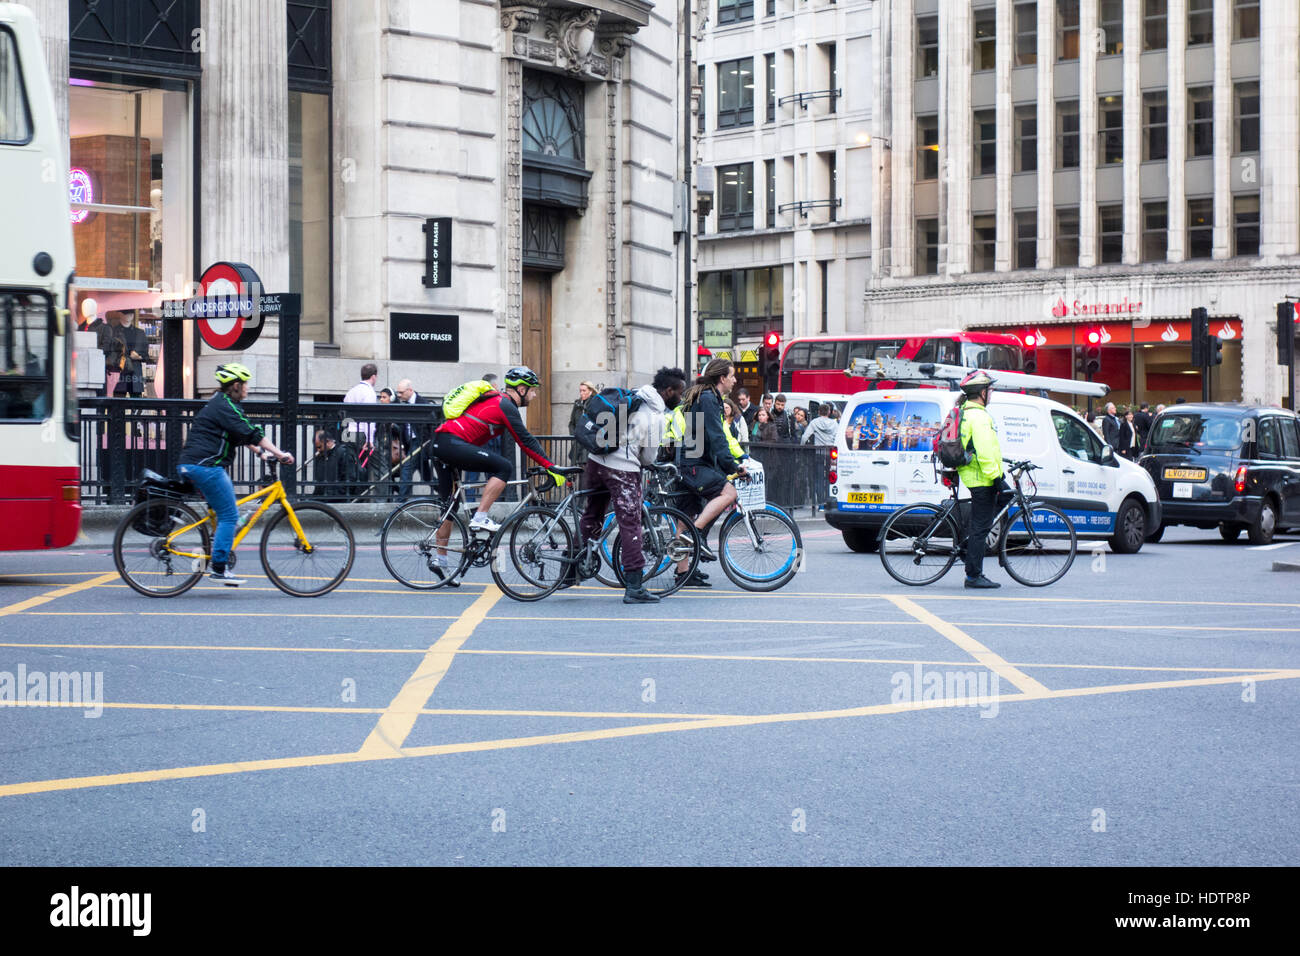 Les cyclistes les cyclistes en attente dans une boîte de jonction, Ville de London, UK Banque D'Images